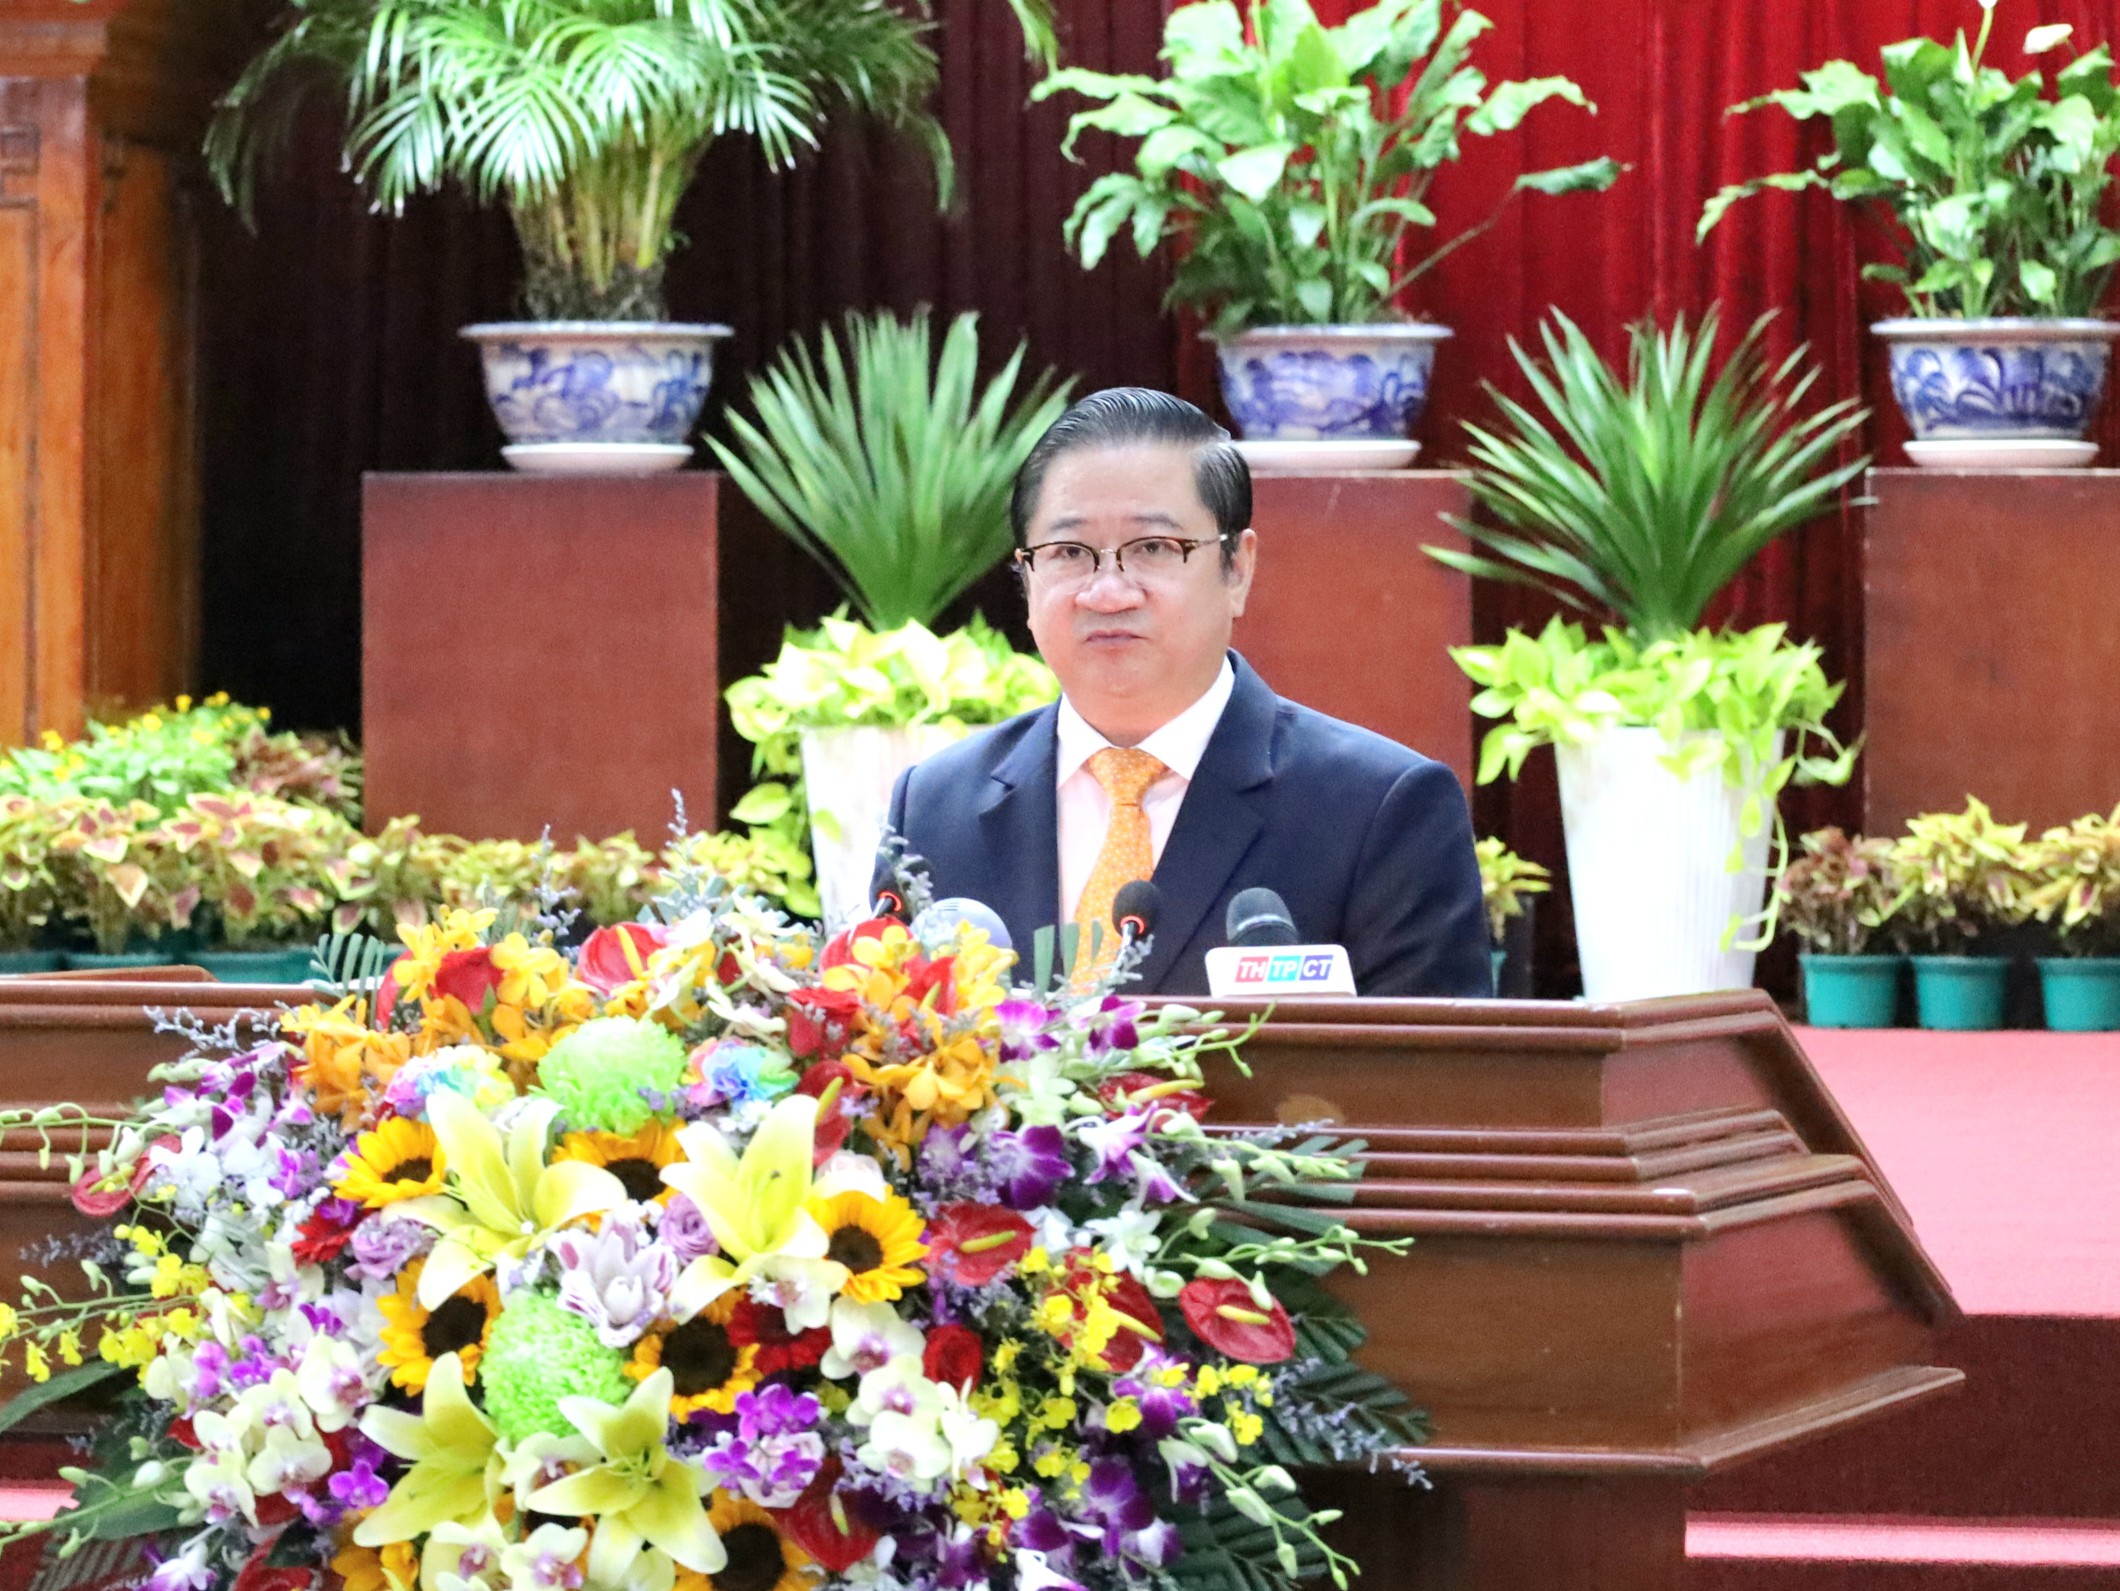 Ông Trần Việt Trường – Phó Bí thư Thành ủy, Chủ tịch UBND TP. Cần Thơ phát biểu tại buổi họp mặt.